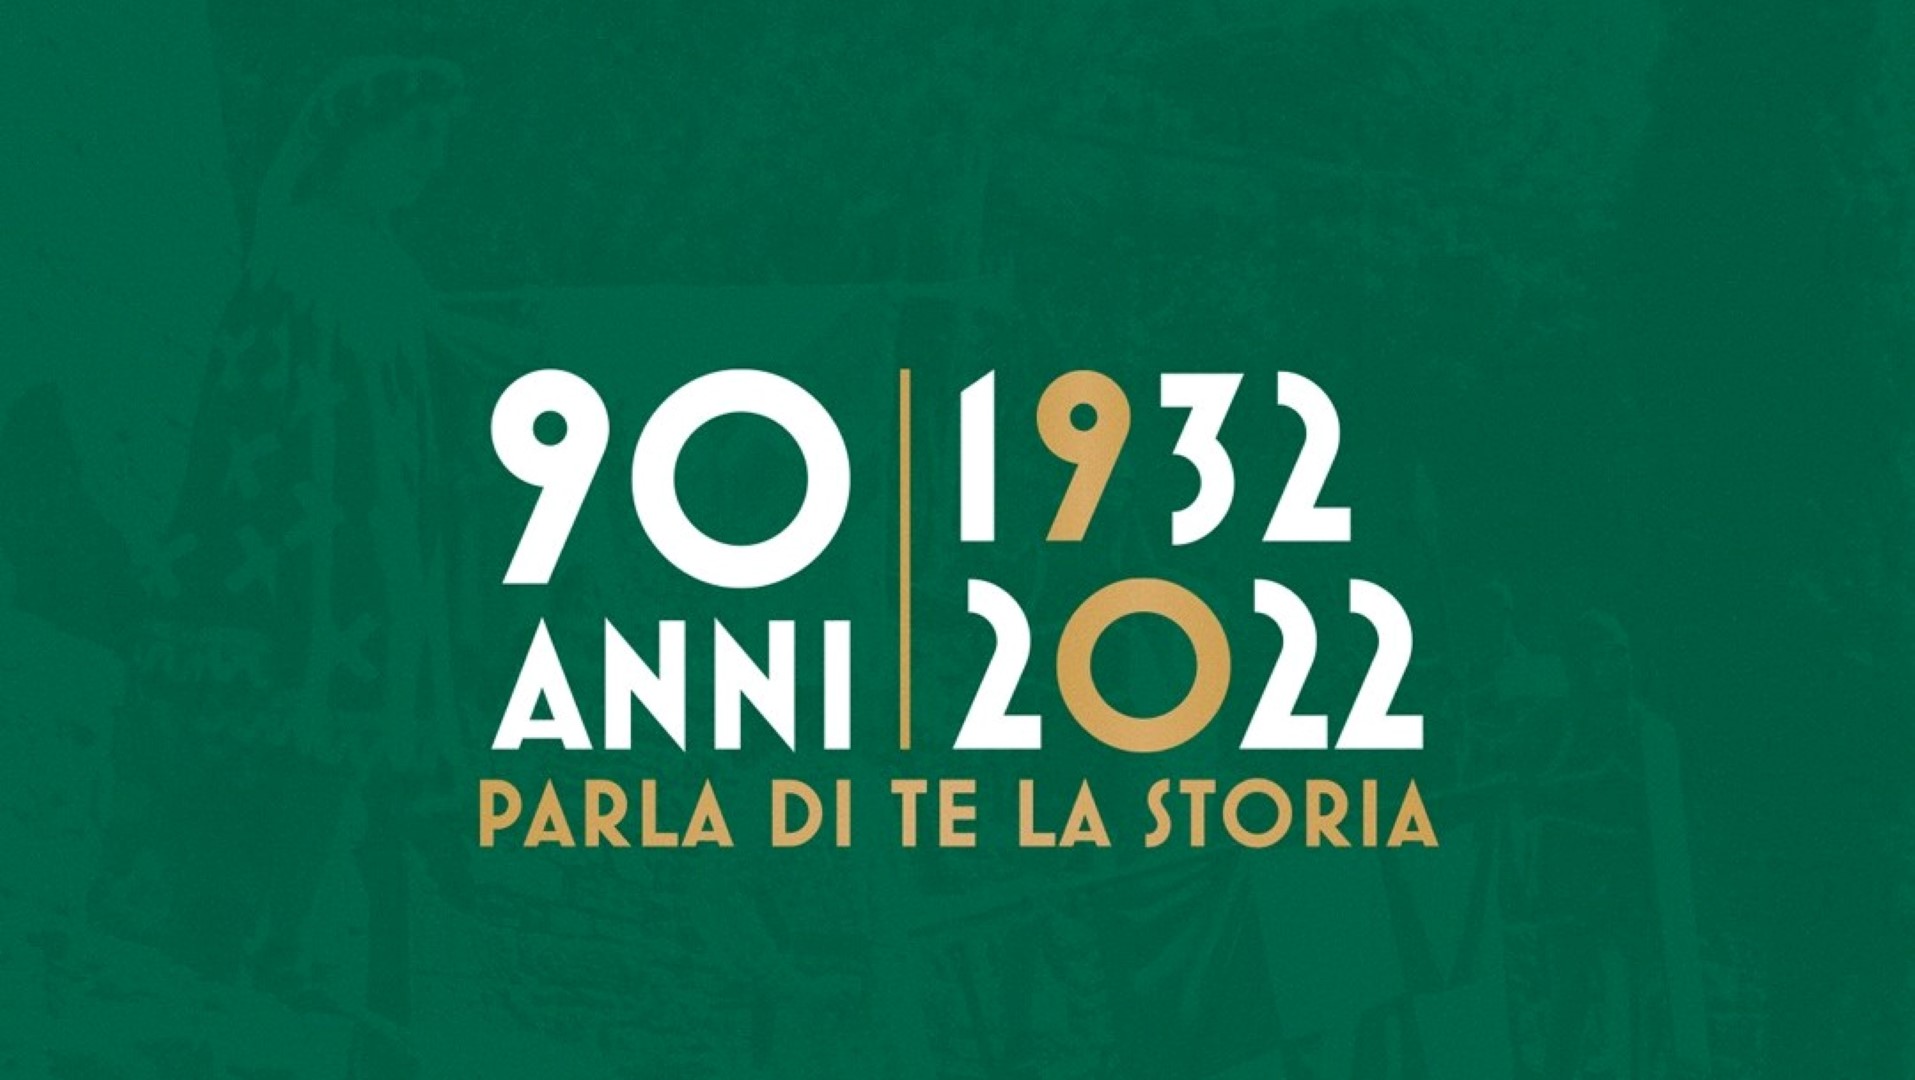 90 anni dei quartieri, presentato il logo celebrativo